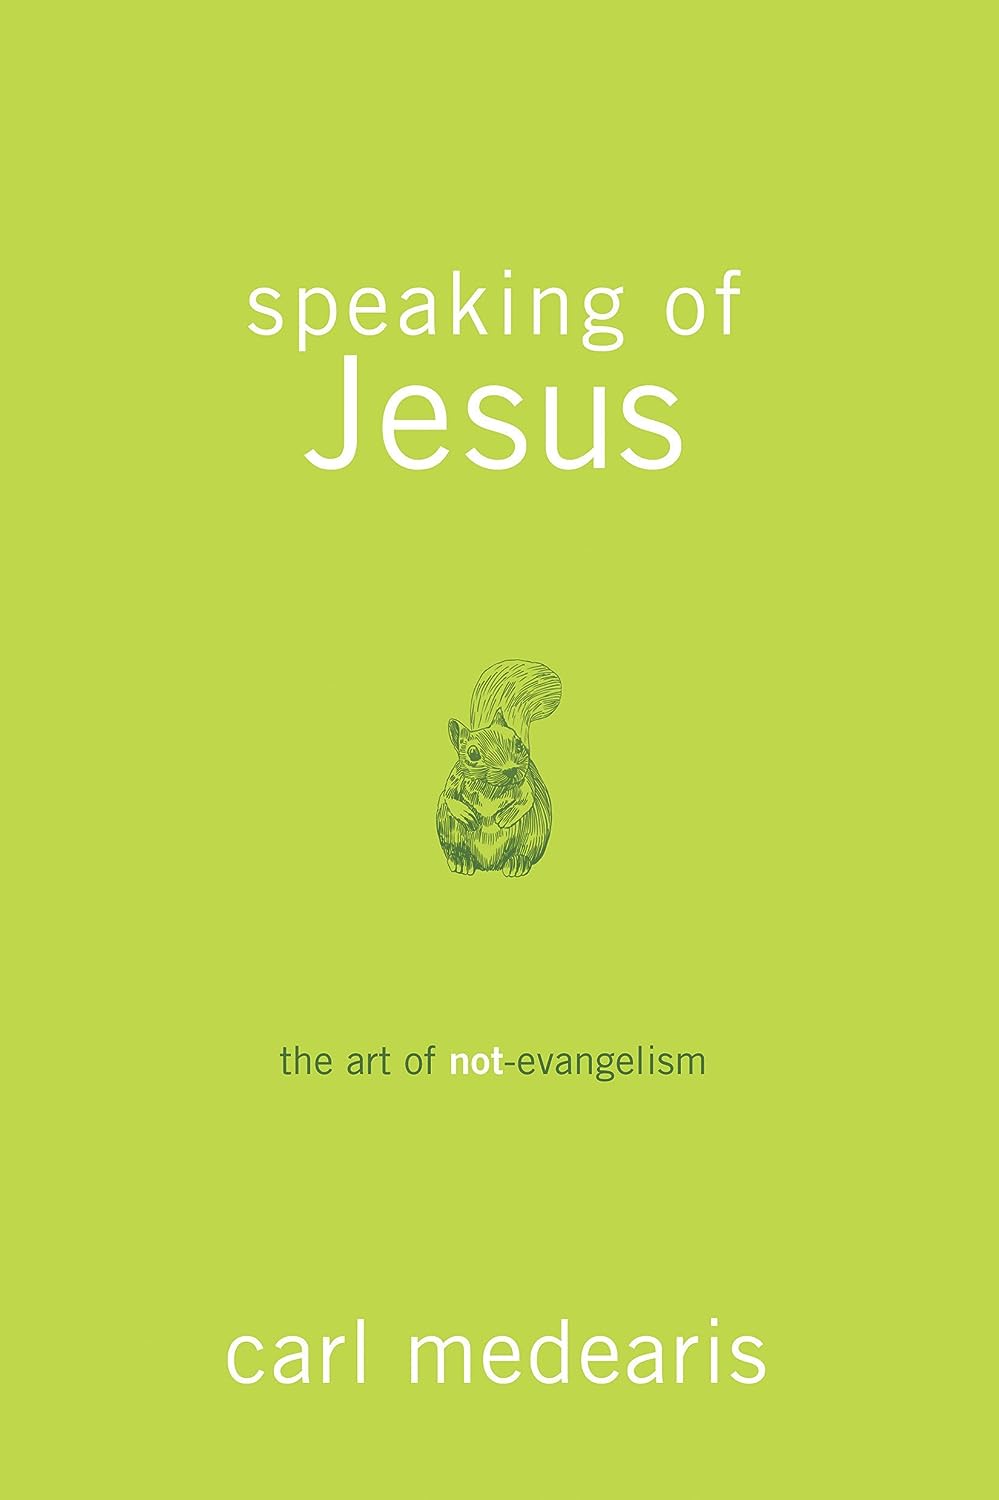 Speaking of Jesus: The Art of Not-Evangelism (paperback) Carl Medearis